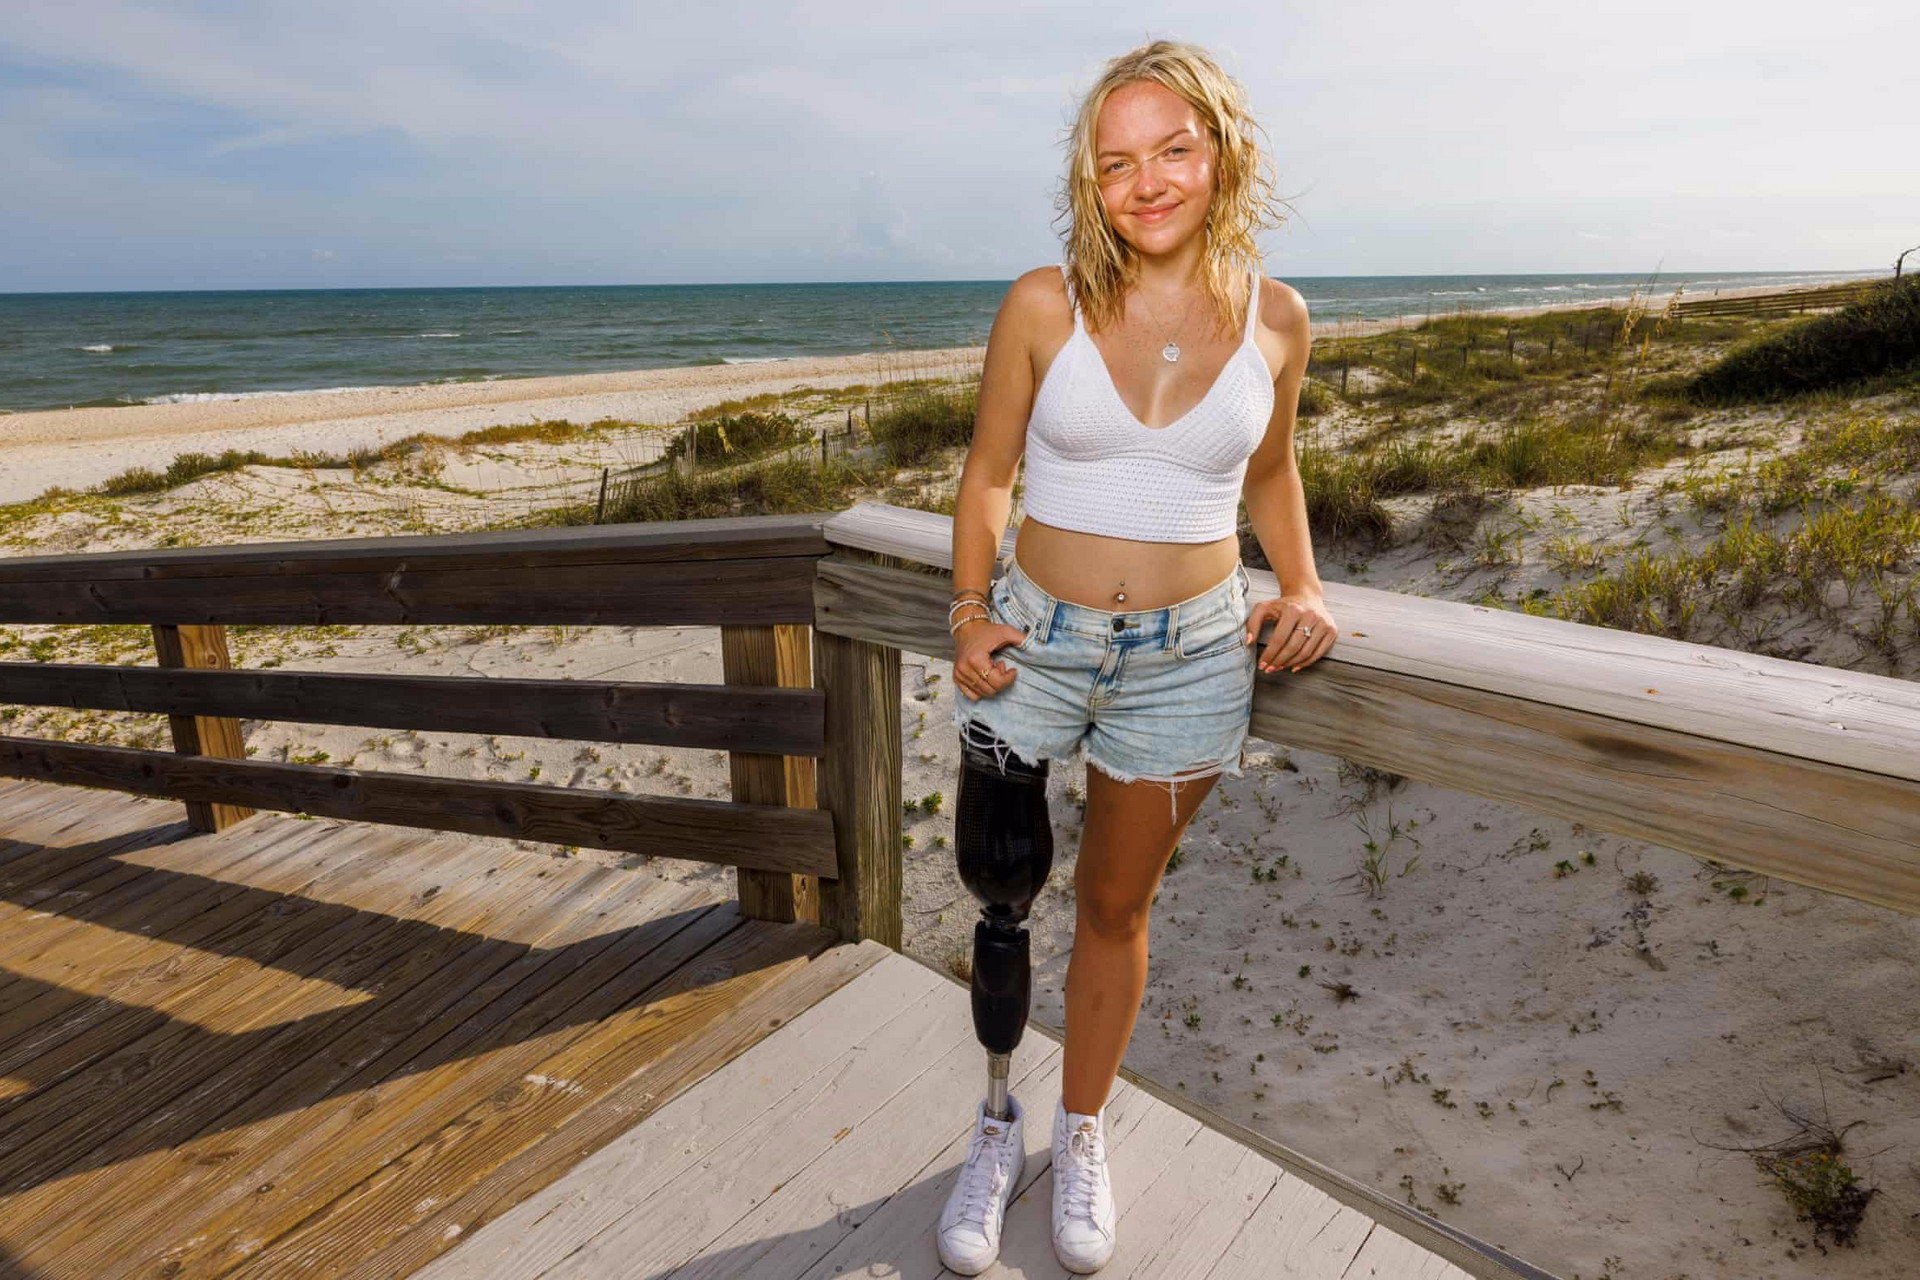 Mỹ: Nghị lực của cô gái 18 tuổi chiến đấu với cá mập để giành giật sự sống - 1